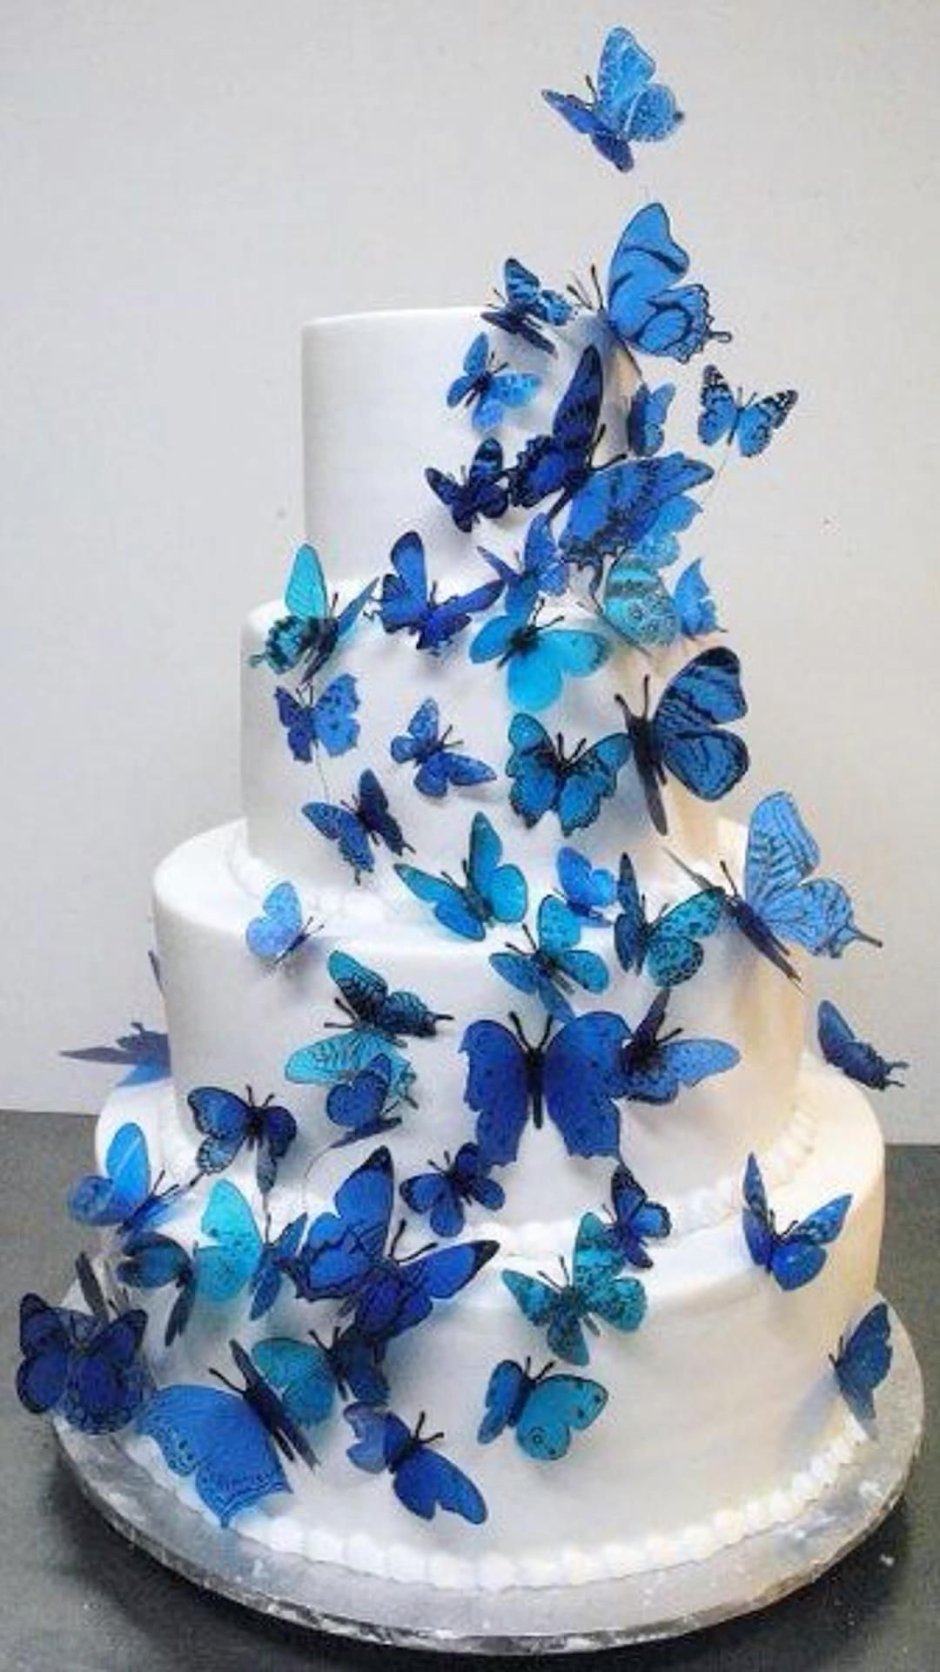 Голубой торт с бабочками